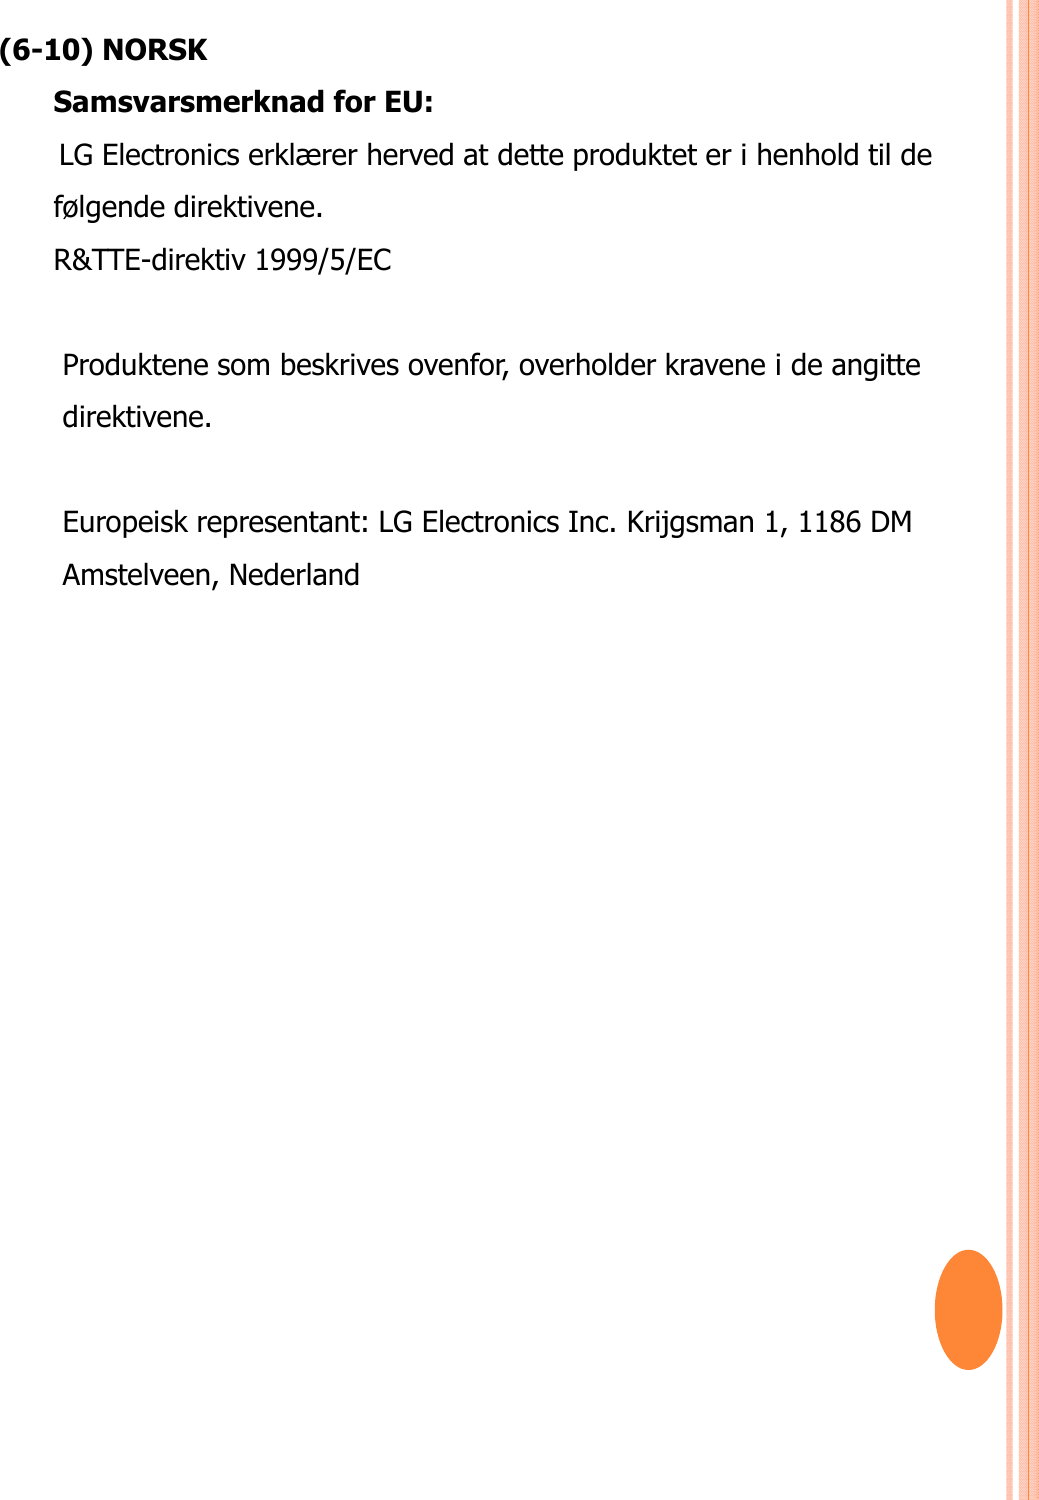 (6-10) NORSKSamsvarsmerknad for EU: LG Electronics erklærer herved at dette produktet er i henhold til de følgende direktivene. R&amp;TTE-direktiv 1999/5/EC Produktene som beskrives ovenfor, overholder kravene i de angitte direktivene. Europeisk representant: LG Electronics Inc. Krijgsman 1, 1186 DM Amstelveen, Nederland